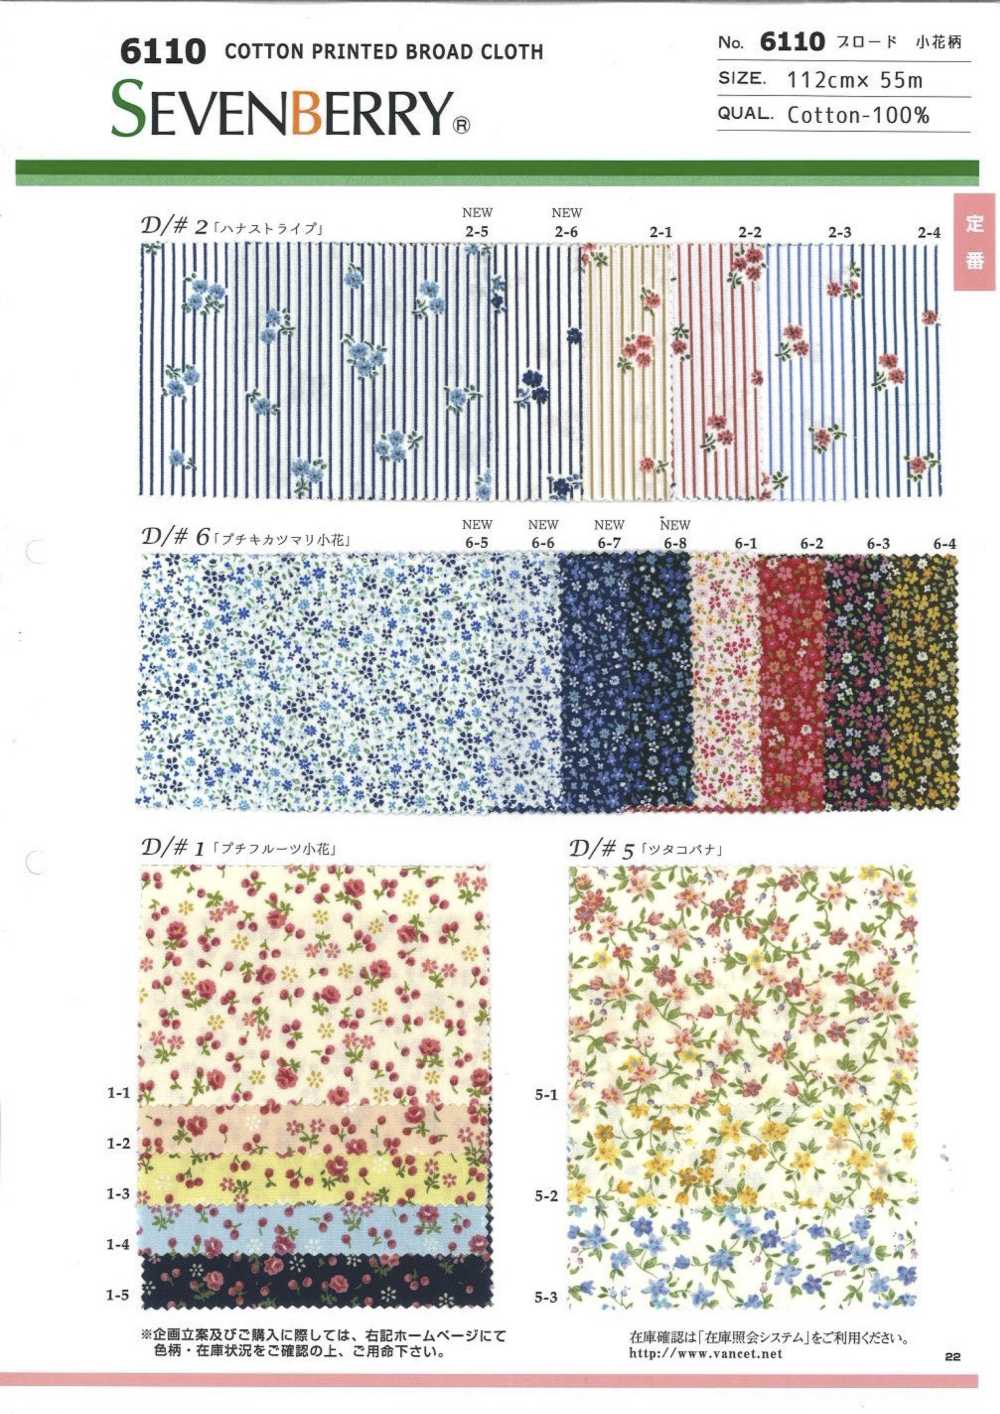 6110 SEVENBERRY Broadcloth Floret Pattern[Textile / Fabric] VANCET